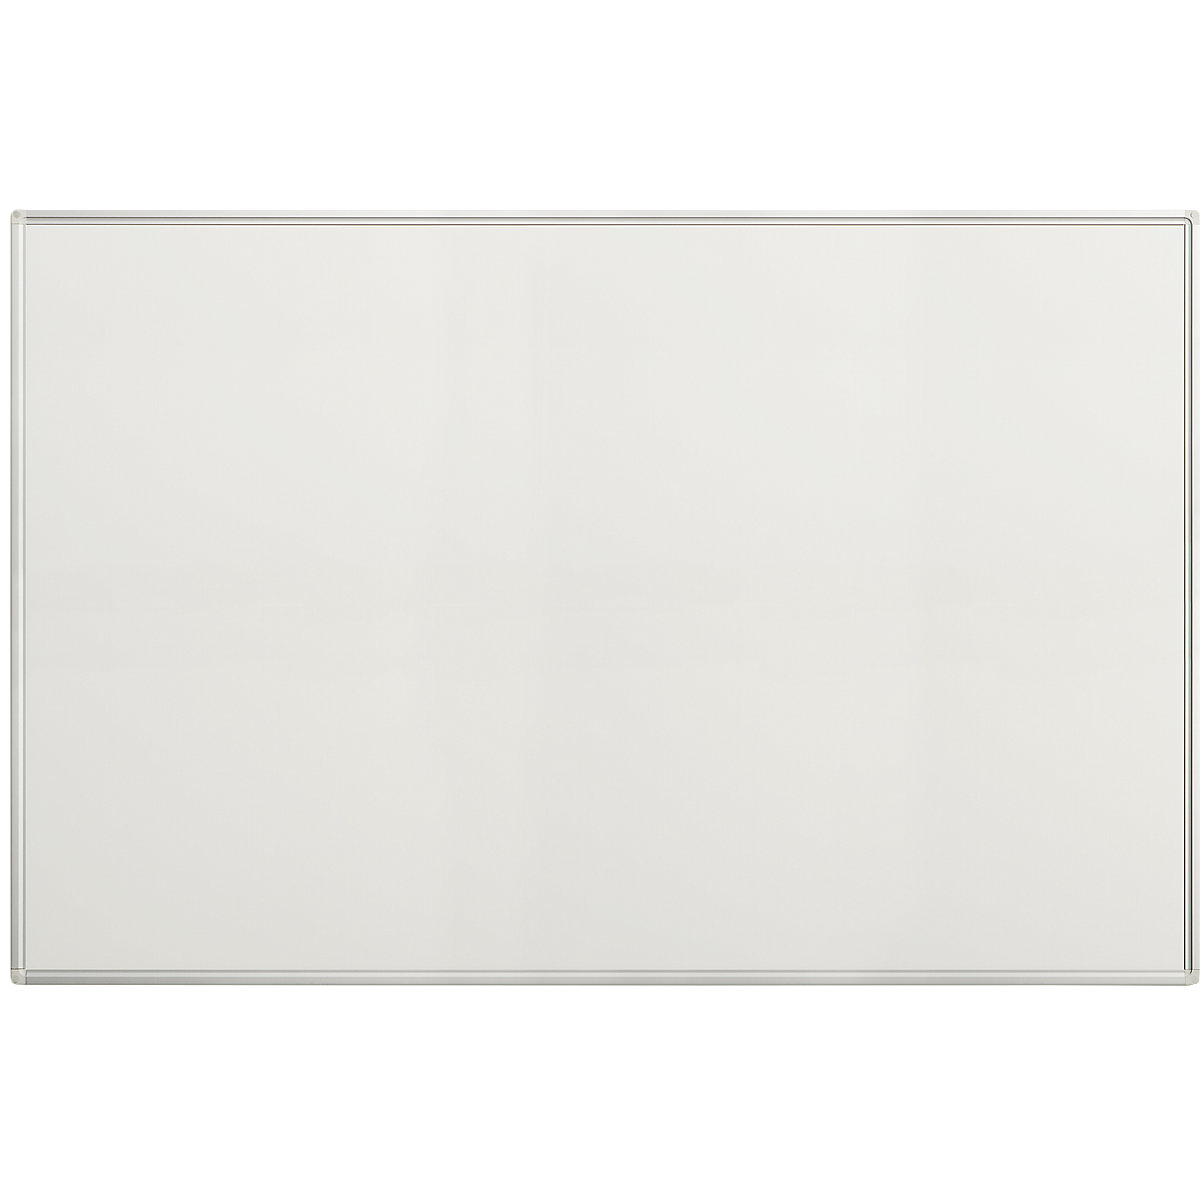 Tableau blanc Economy – eurokraft pro, tôle d'acier laquée, l x h 1500 x 1000 mm-11